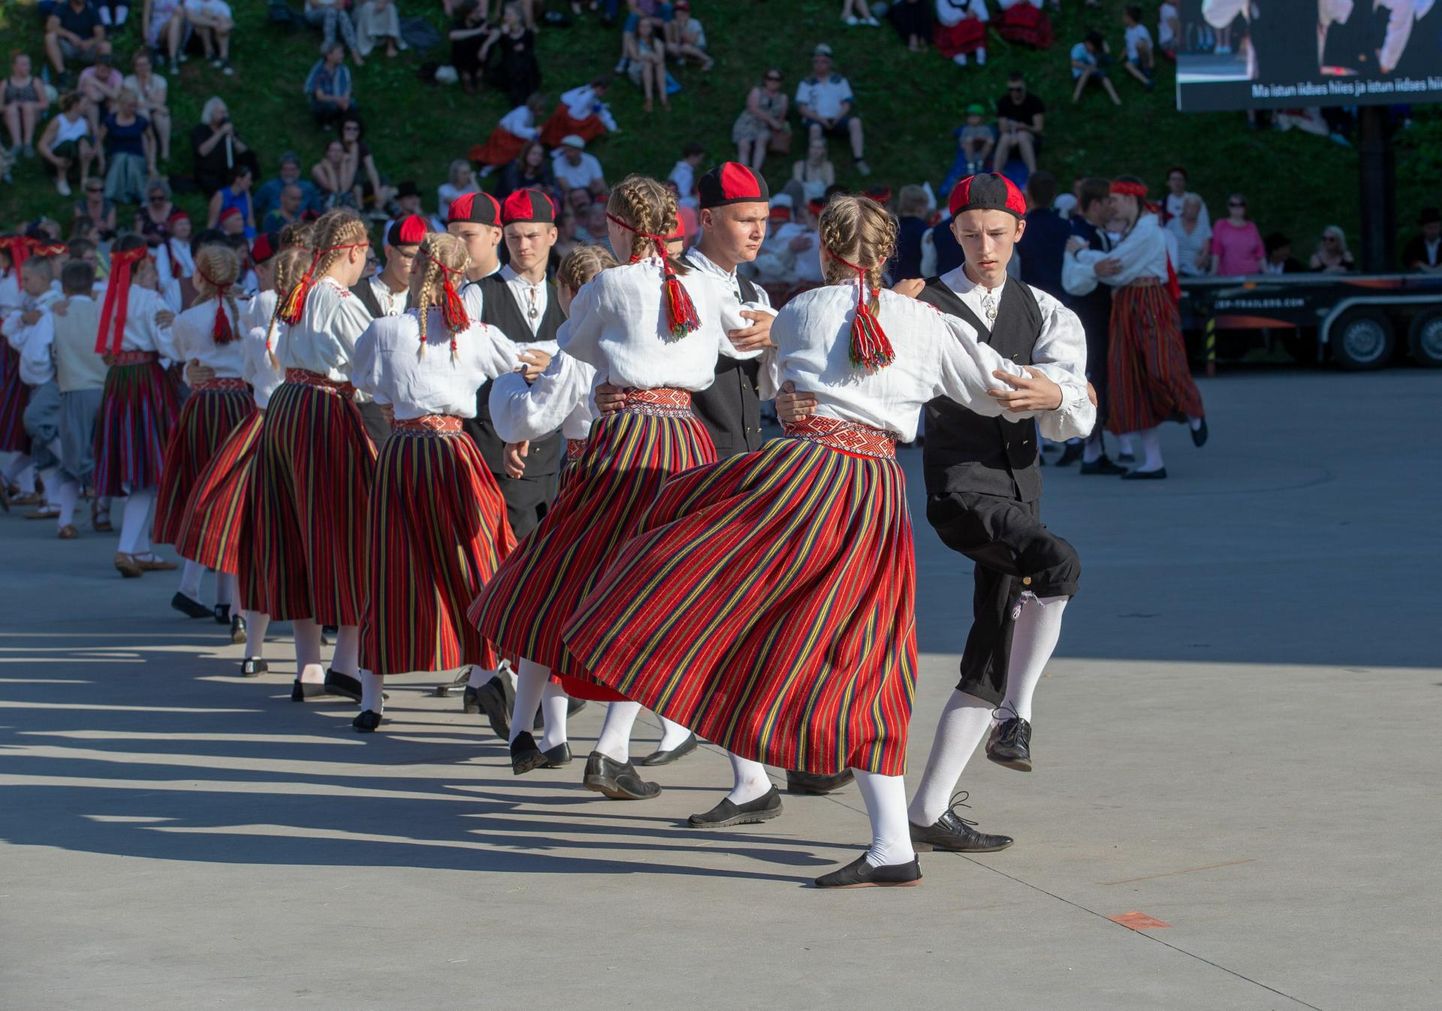 Kui eeloleval nädalavahetusel lauldakse ja tantsitakse Põhja-Sakala vallas, siis järgmise nädala lõpus tuleb Viljandis kogu maakonna laulu- ja tantsupidu "Keskpõrandale kokku".